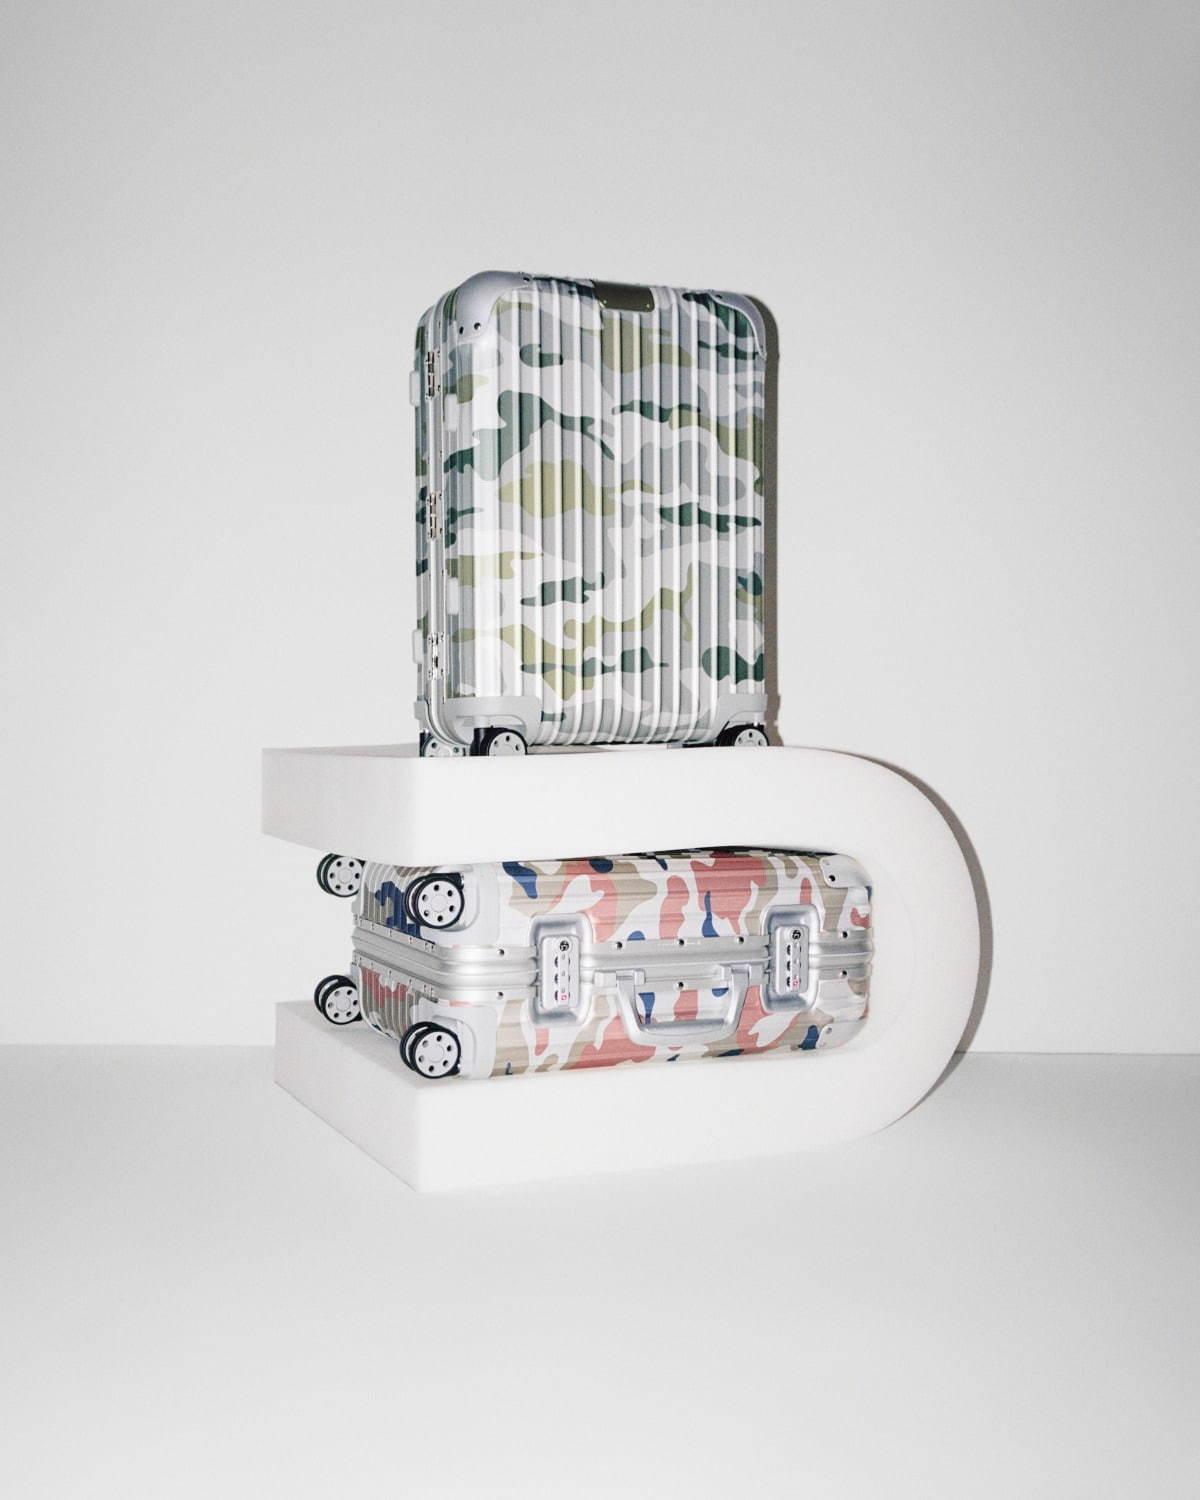 リモワの「カモフラージュ柄」スーツケース、輝くアルミニウム合金に“浮かび上がる”ような模様 コピー